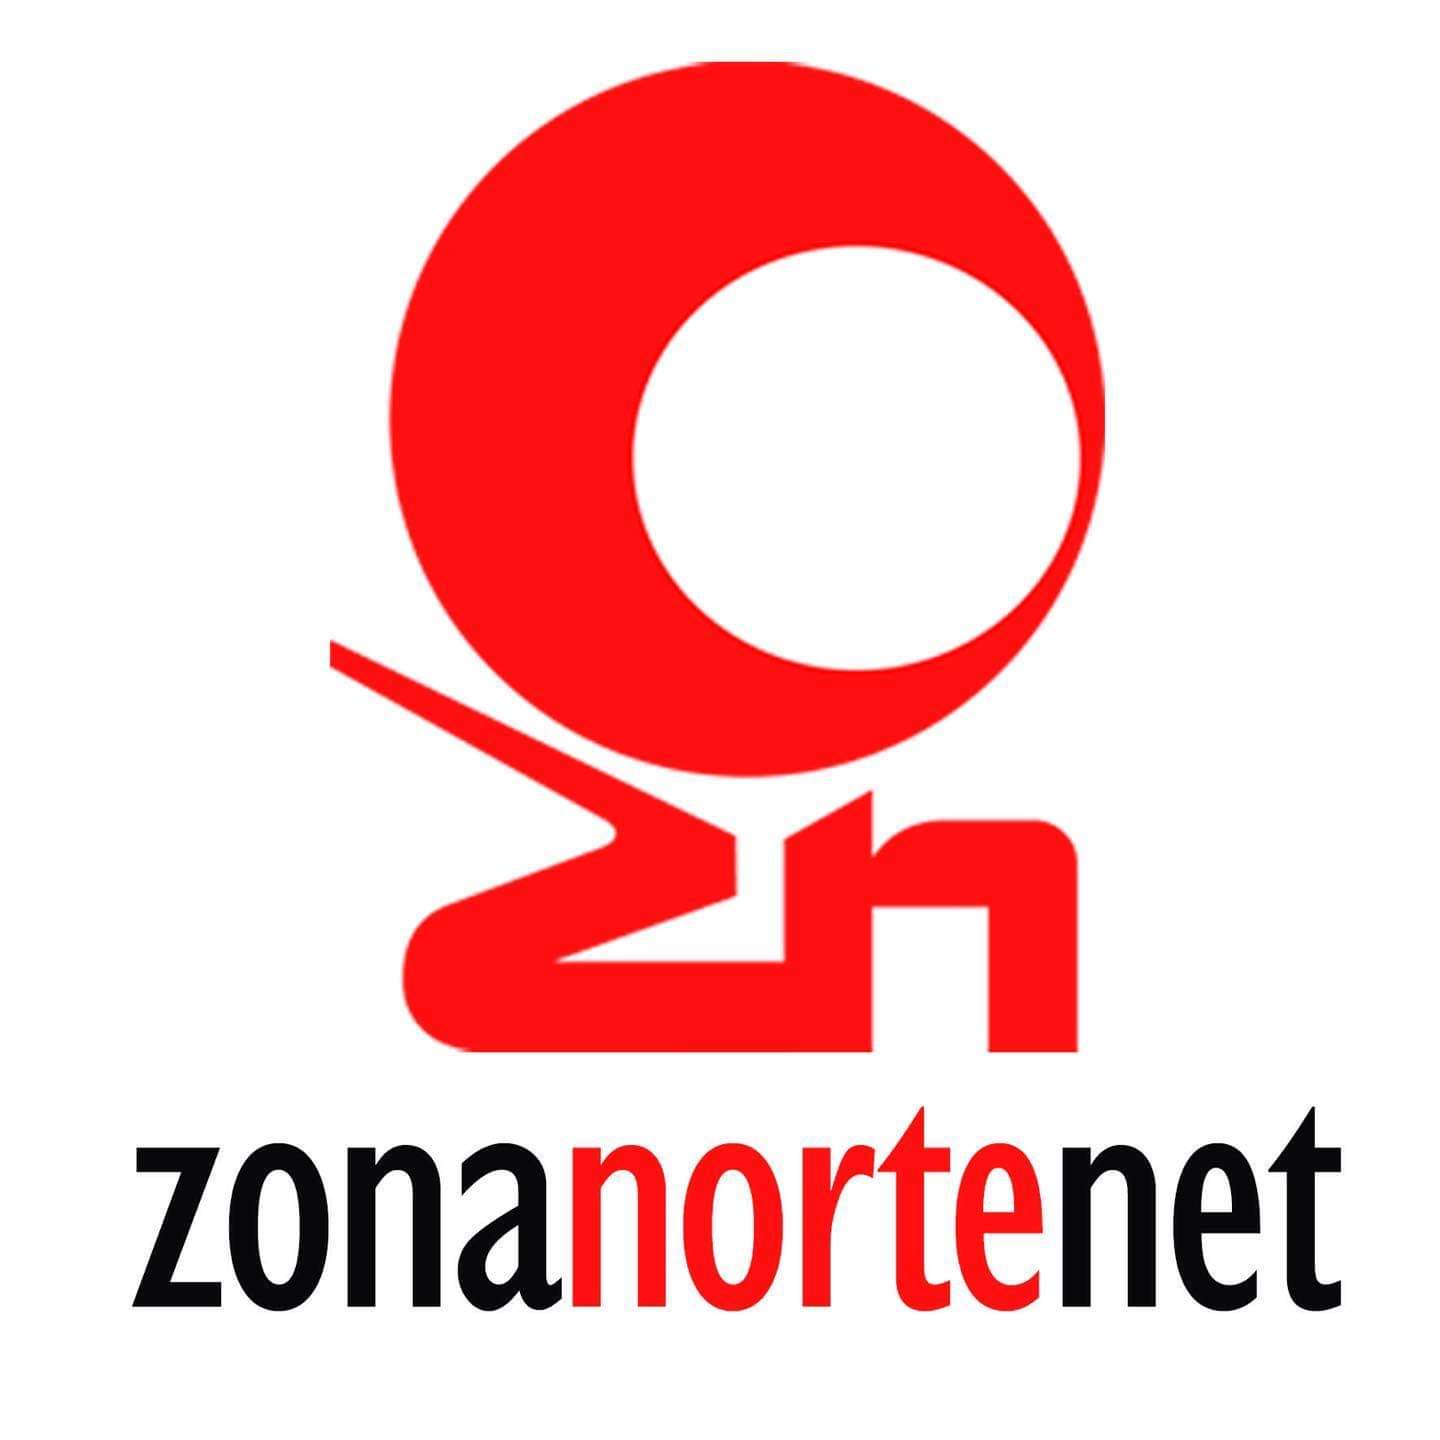 Zona Norte Net